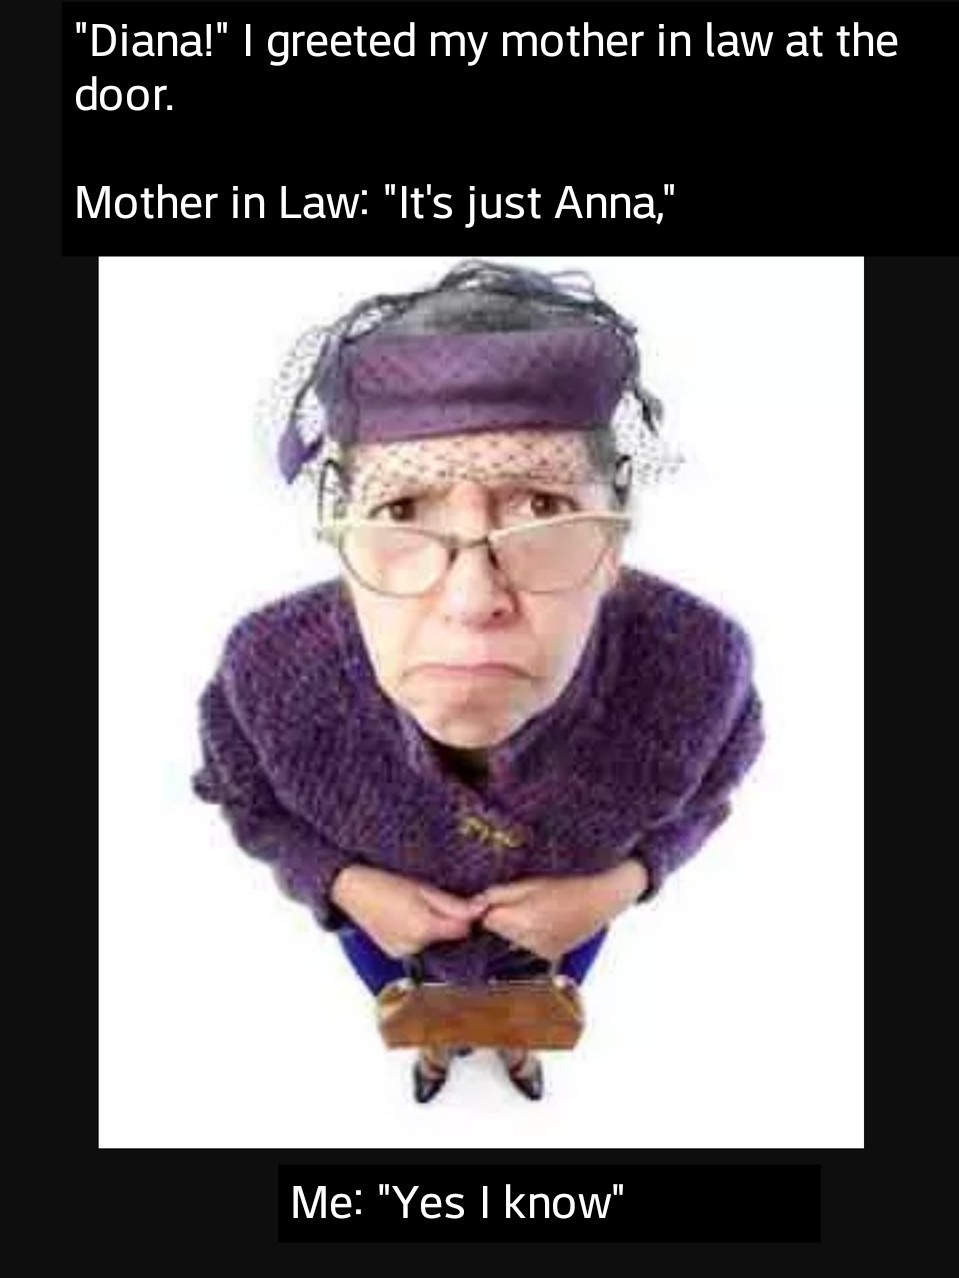 Enjoy the meme 'Mother in Law' uploaded by El_Joker. 